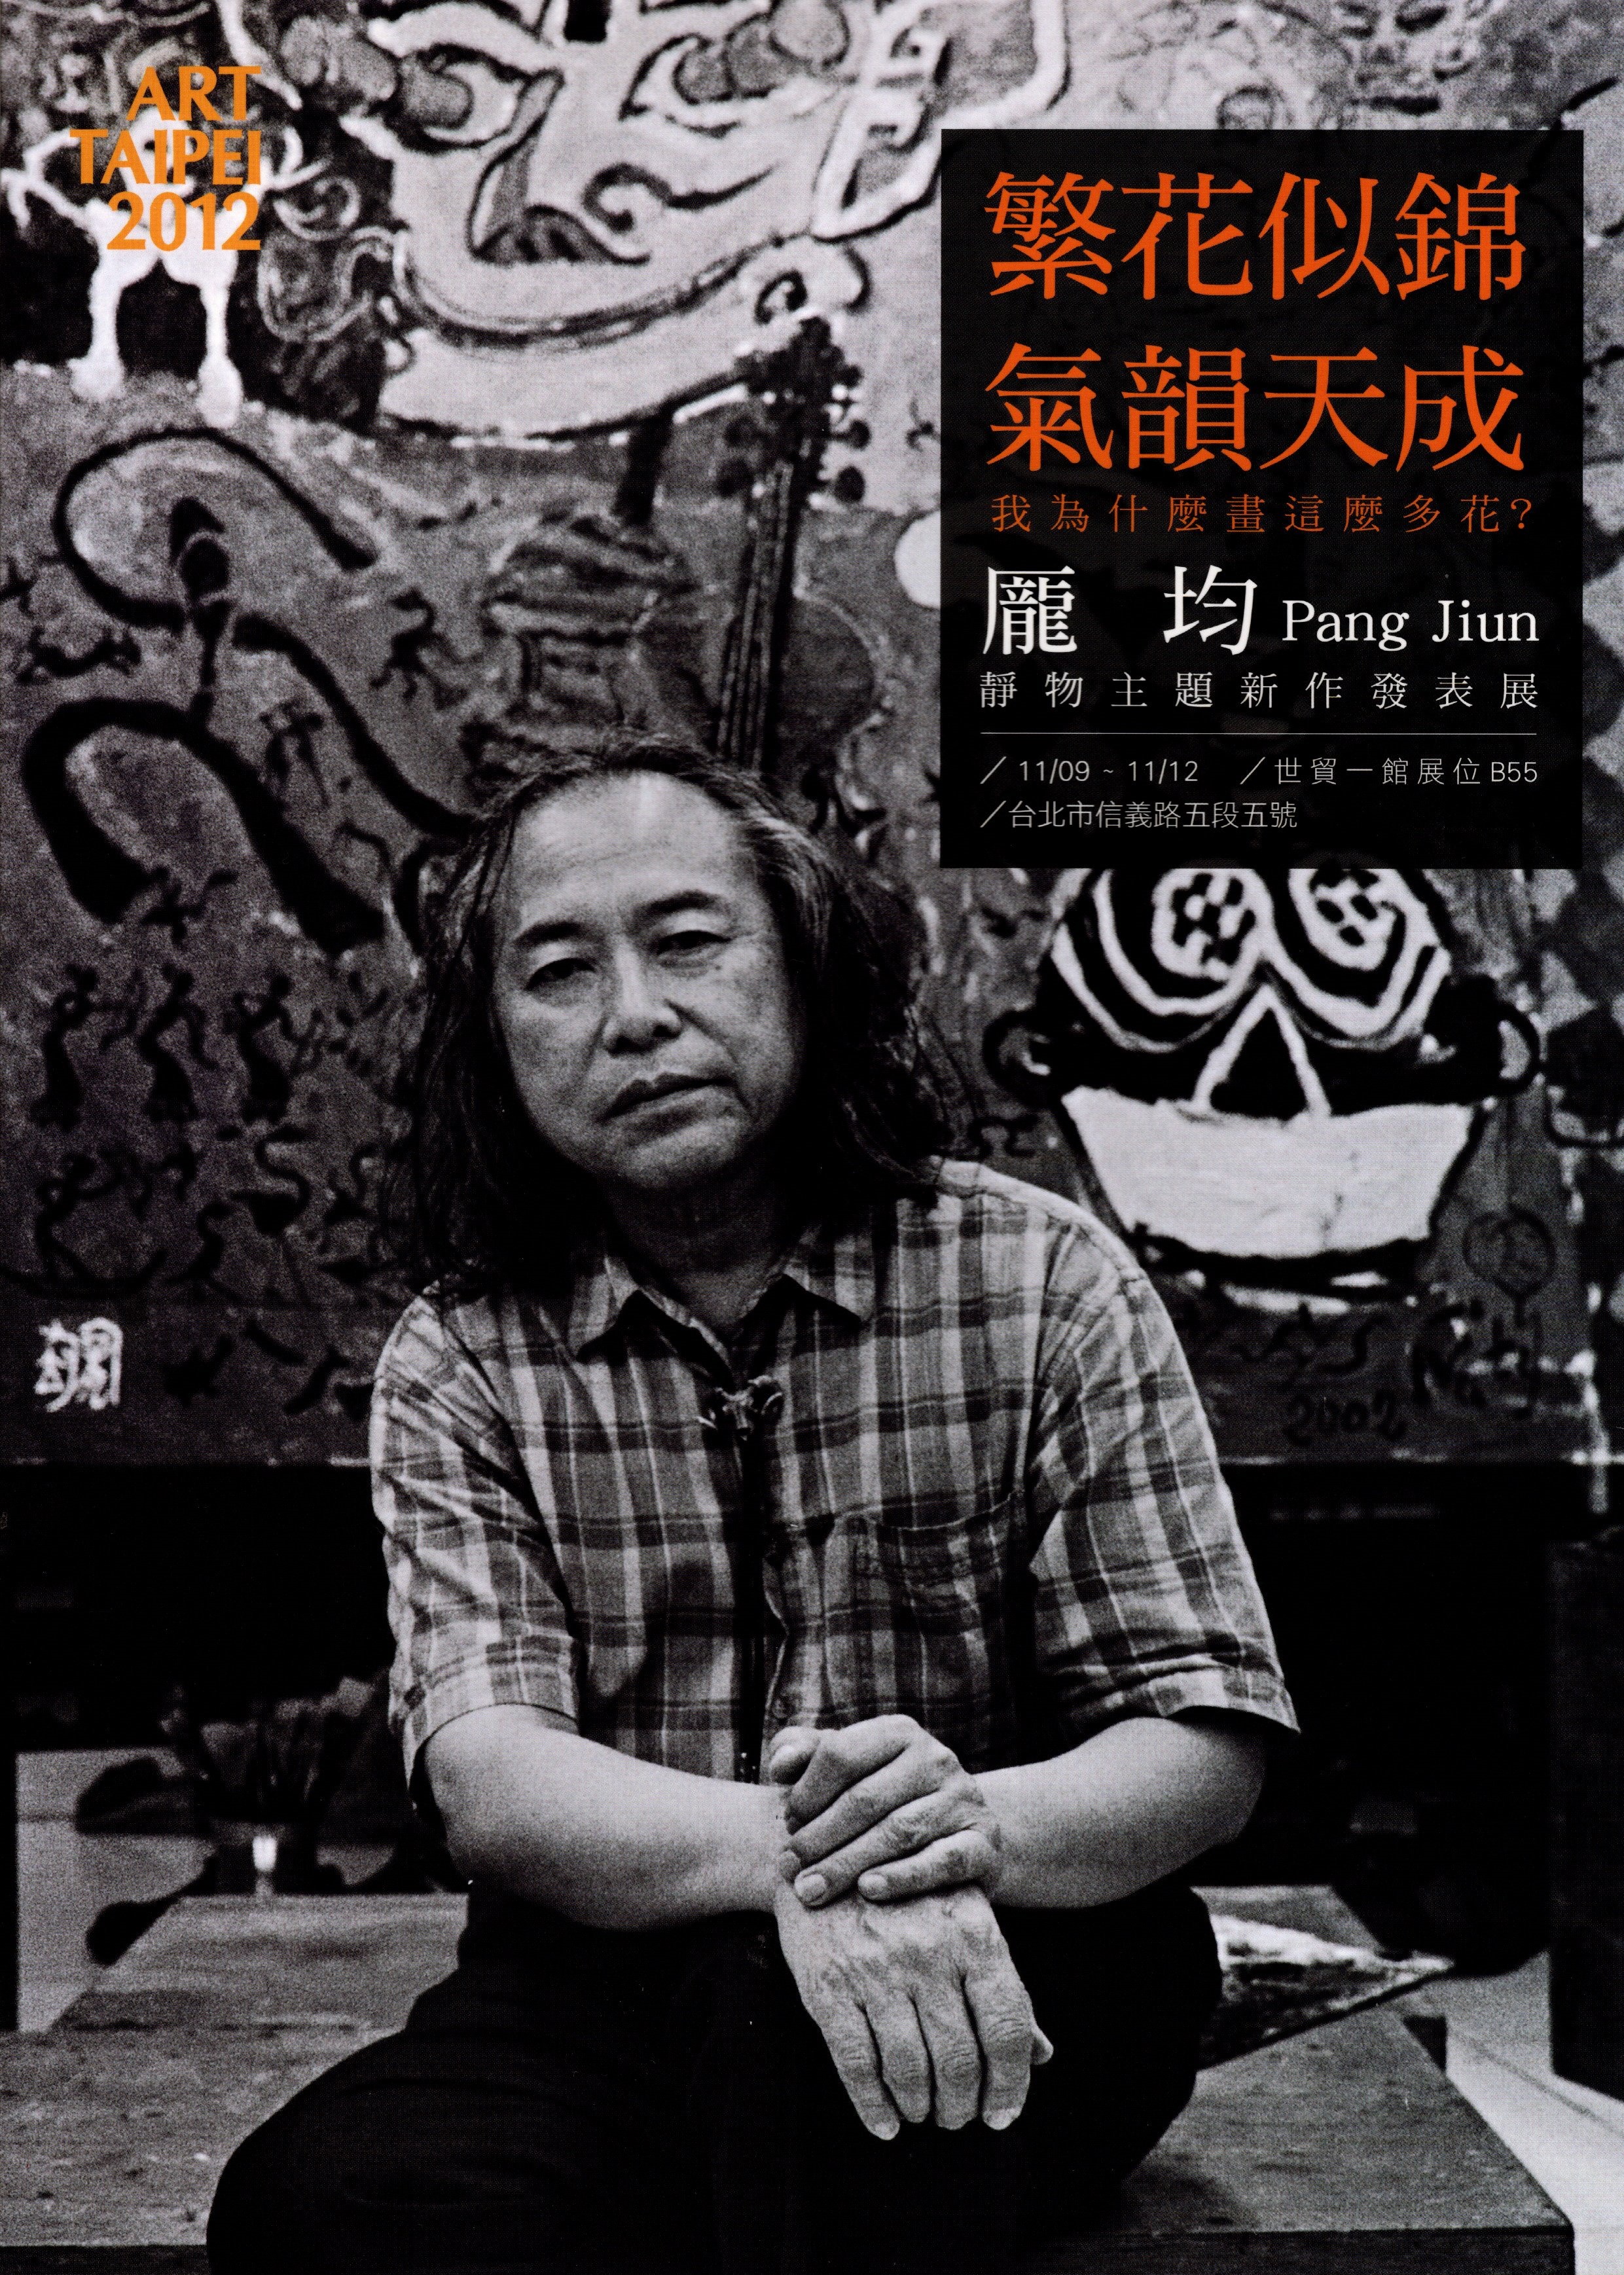 2012 ART TAIPEI 台北國際藝術博覽會